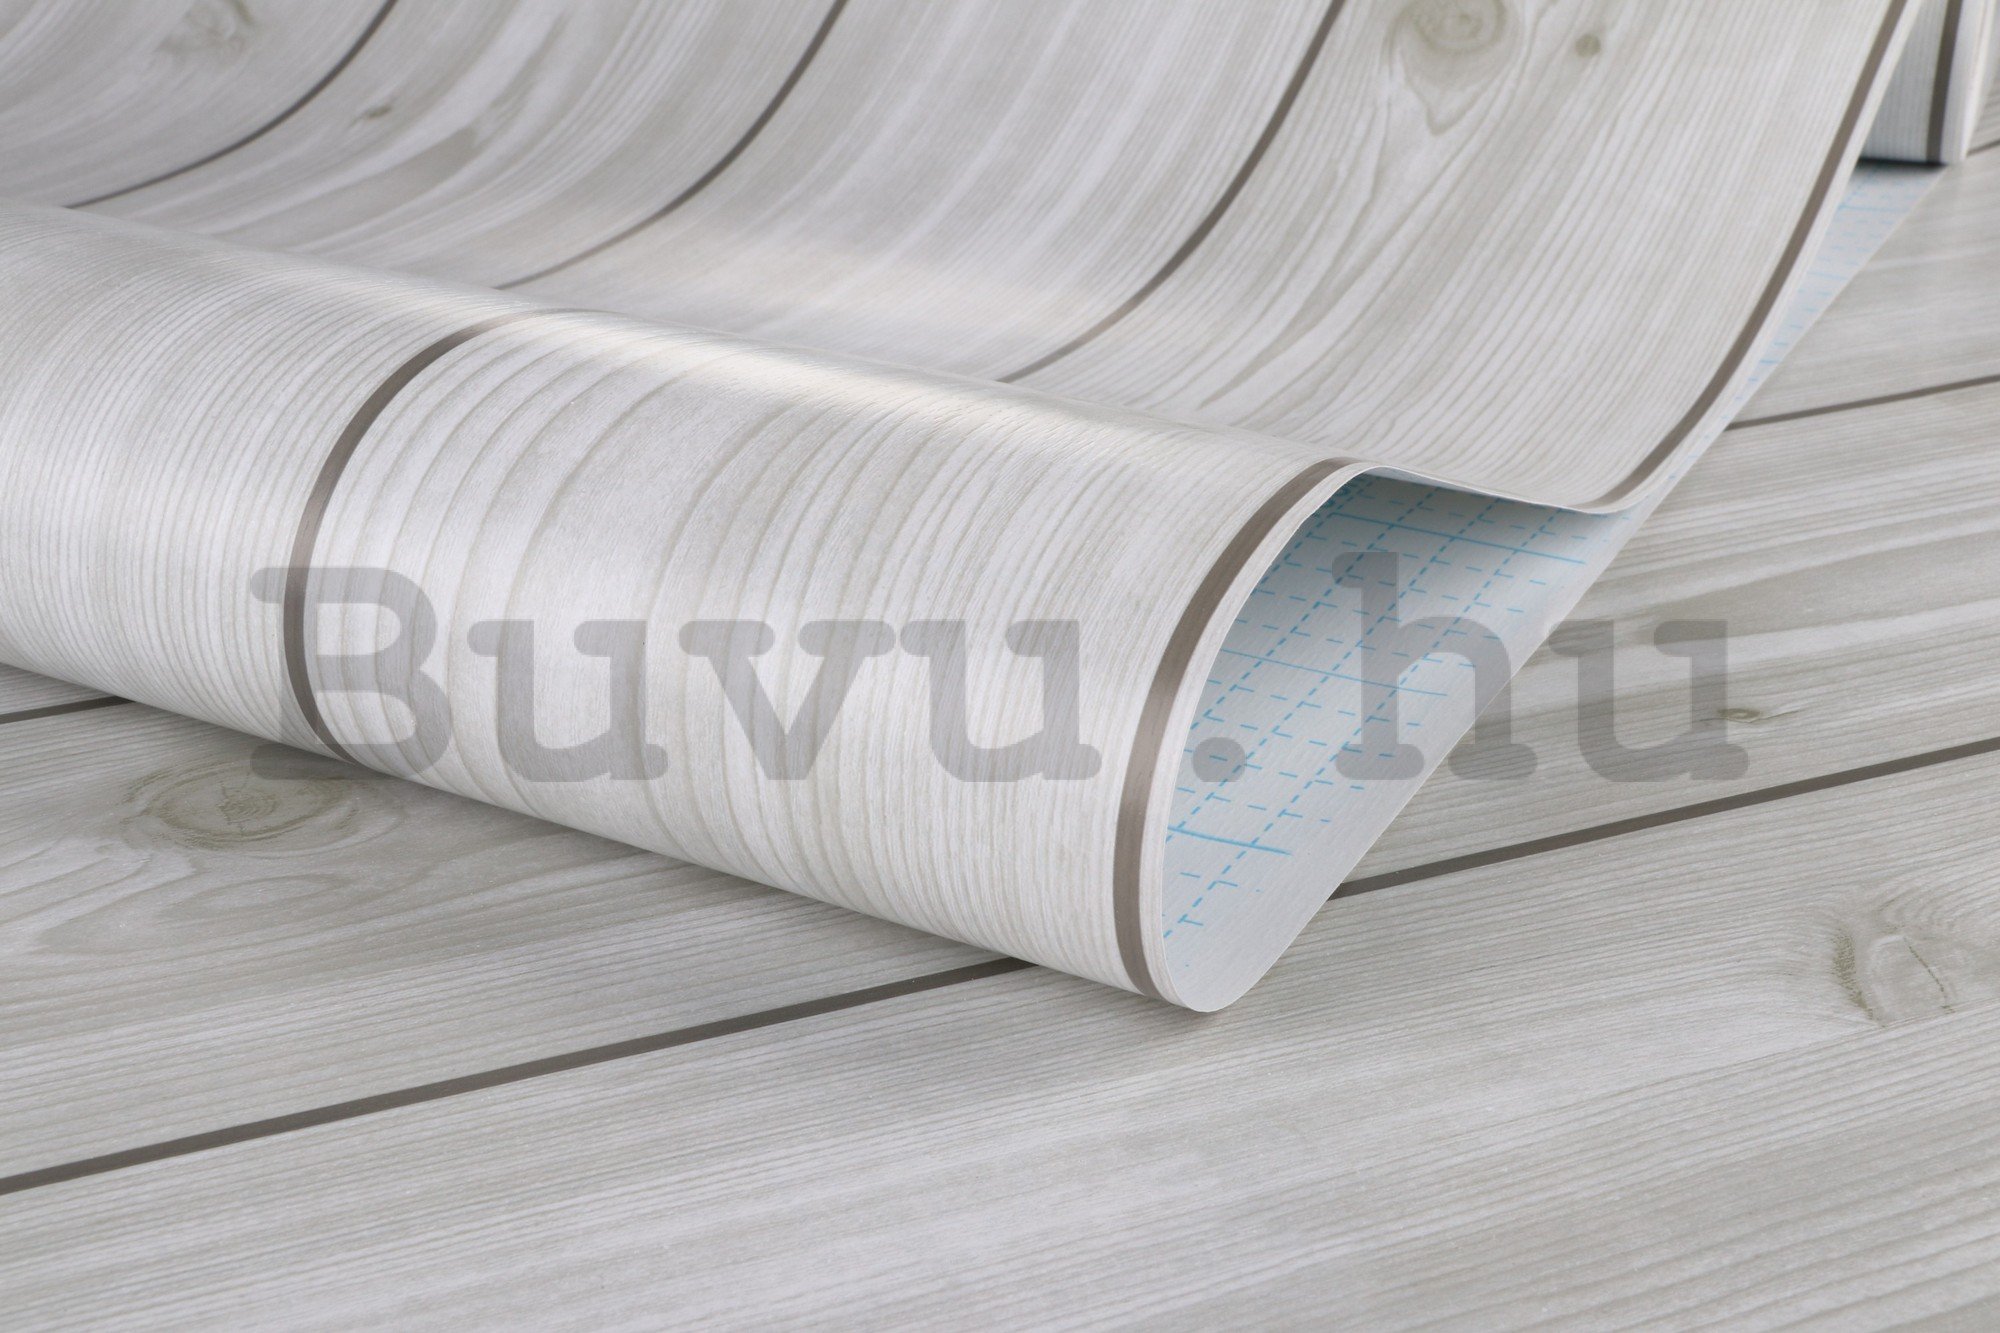 Öntapadó fólia bútorokon fehér fadeszkák 45cm x 3m